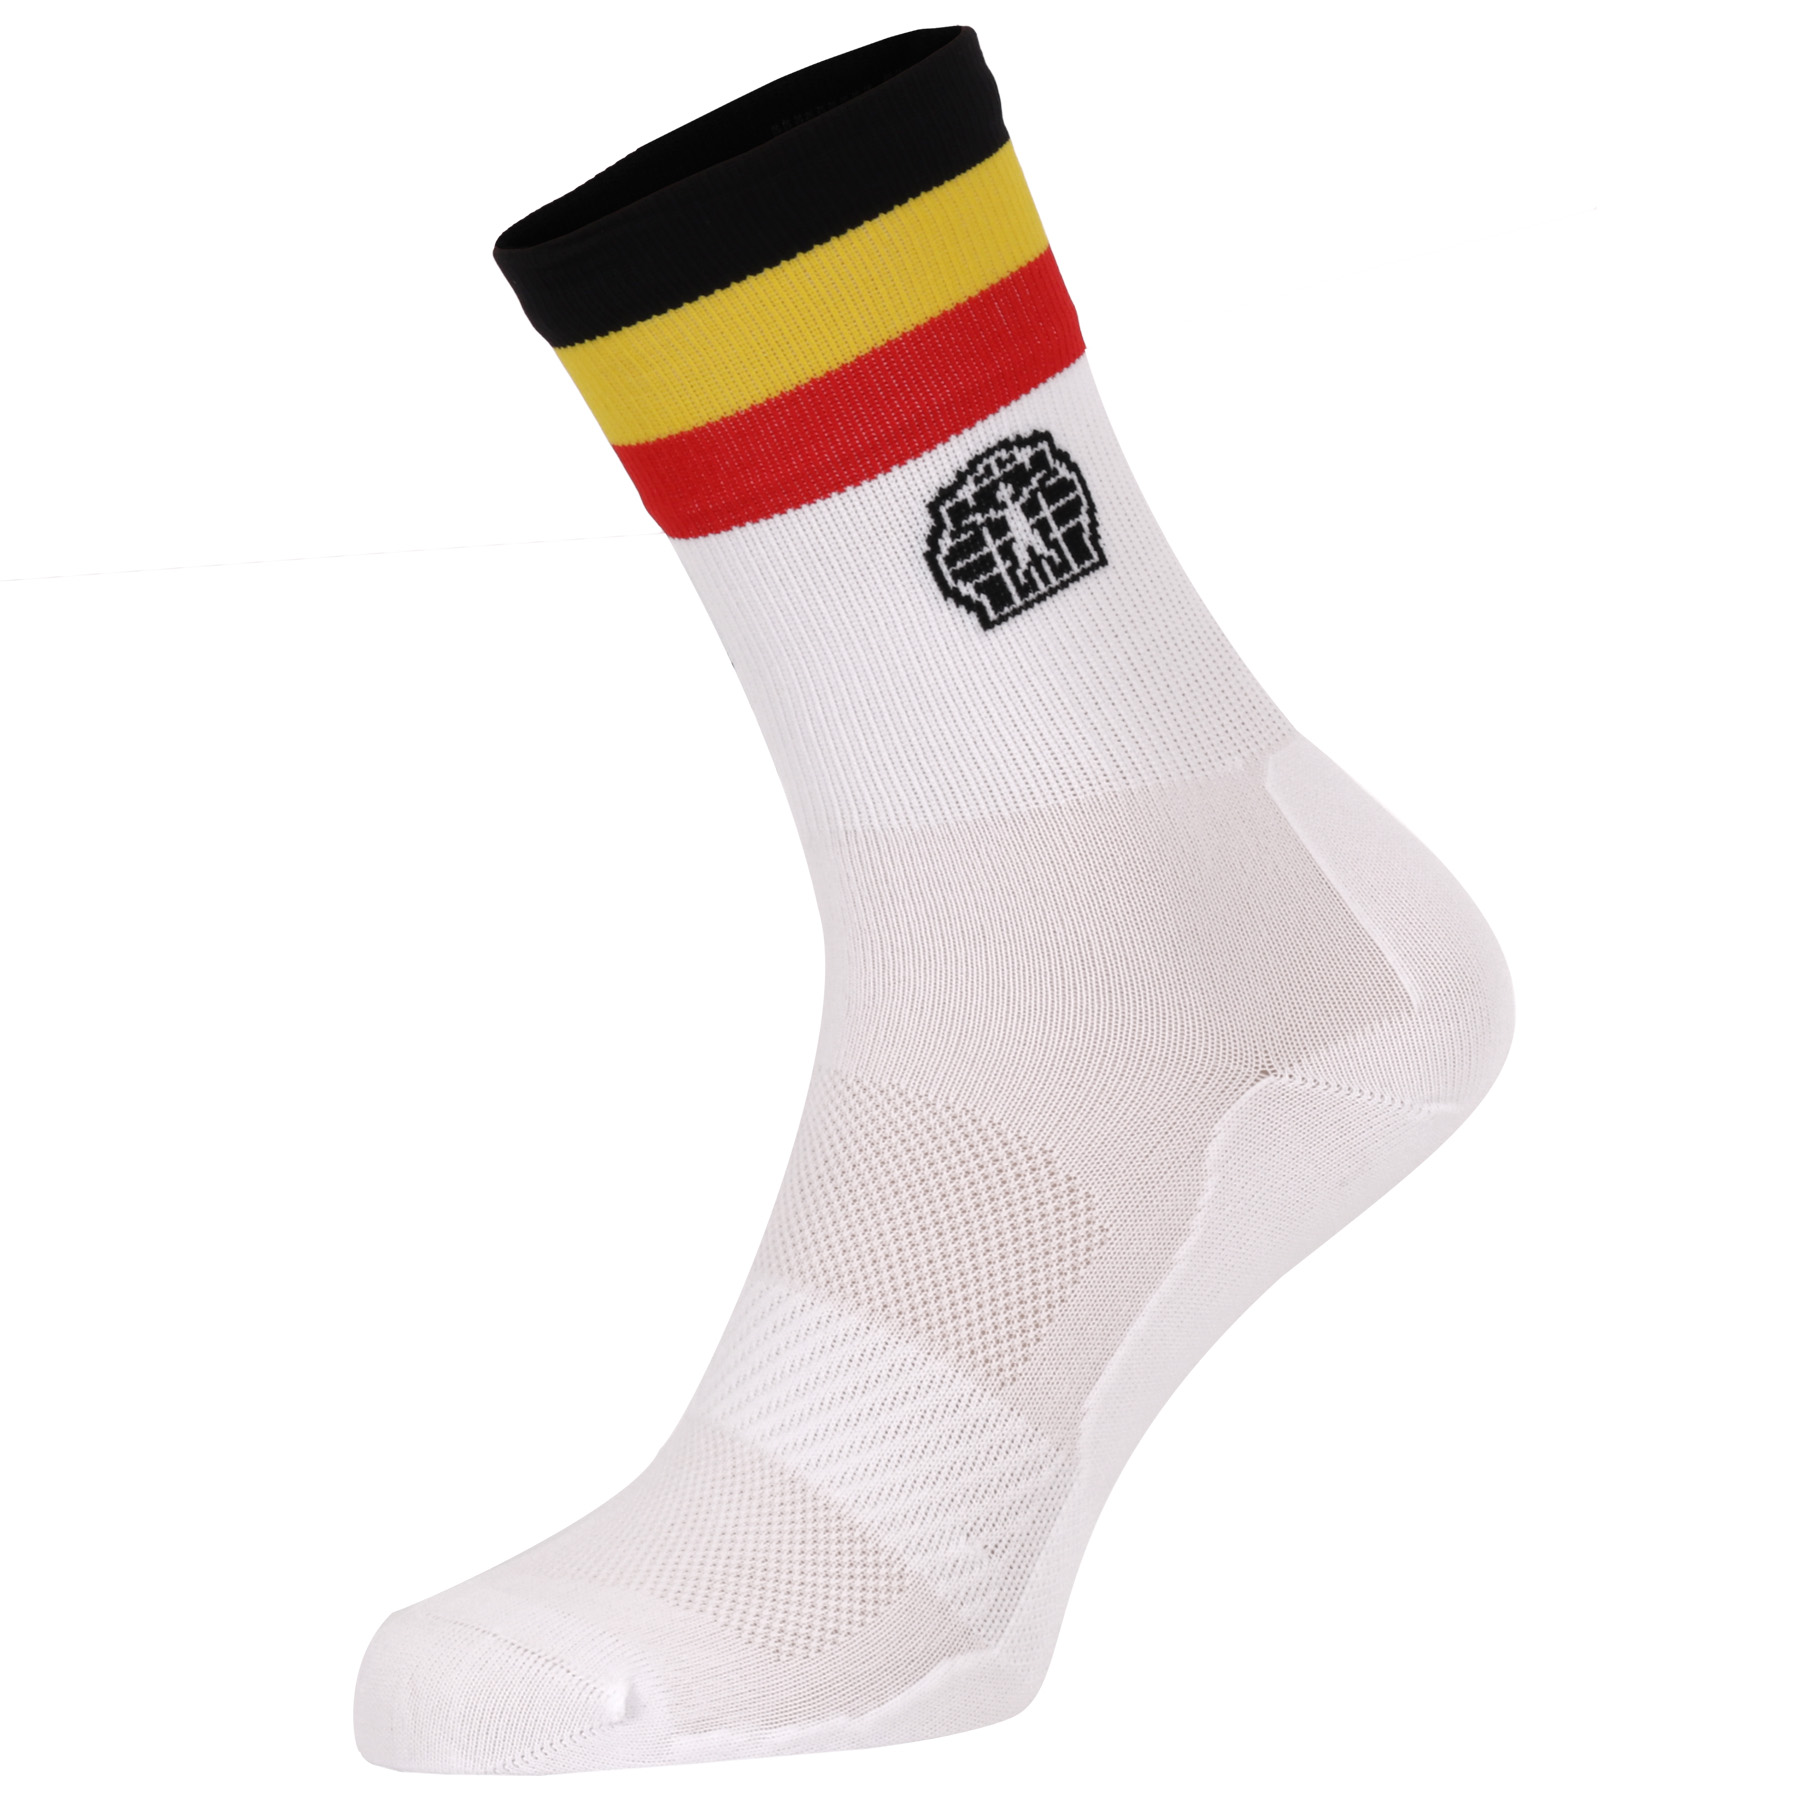 Picture of Bioracer Belgium Socks - Belgium